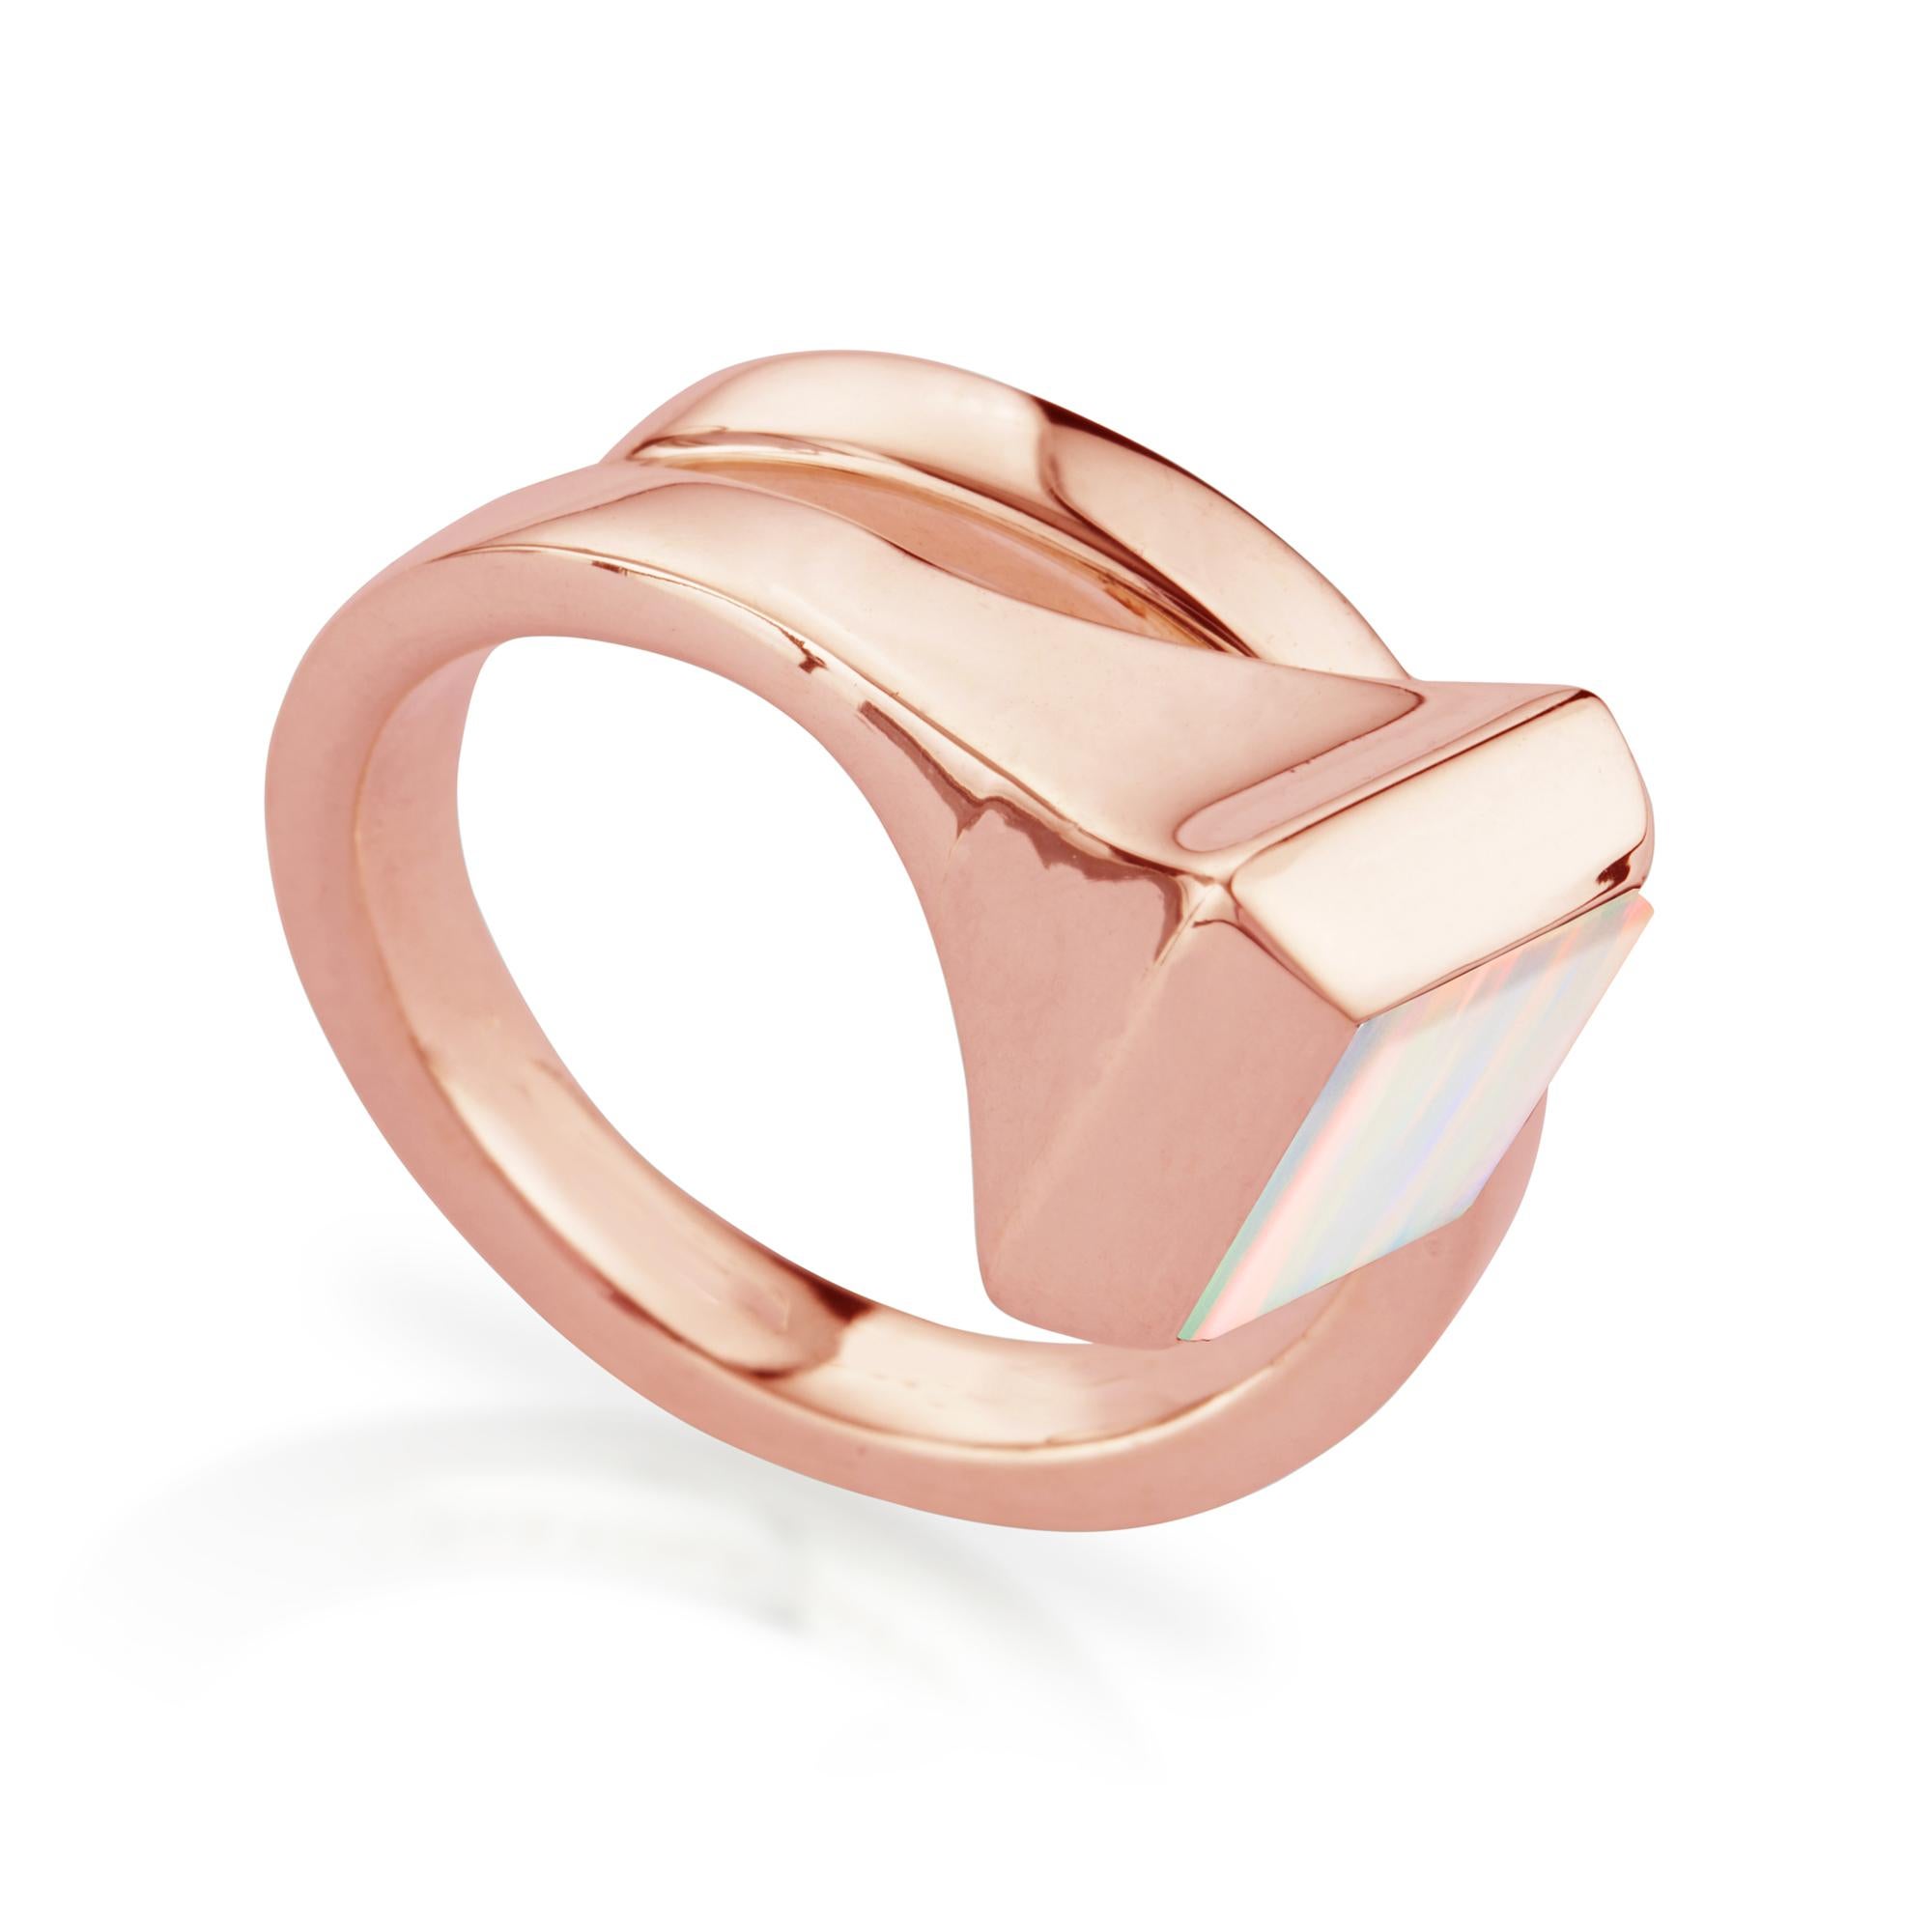 Moderner Ring aus Roségold, besetzt mit Opal, einem Edelstein, der die Kreativität anregt und das Gedächtnis stärkt. Er ist so geformt, dass er sich organisch um den Finger dreht. Rebellisch und kultiviert mit einem Hauch von Rock. Das Design ist